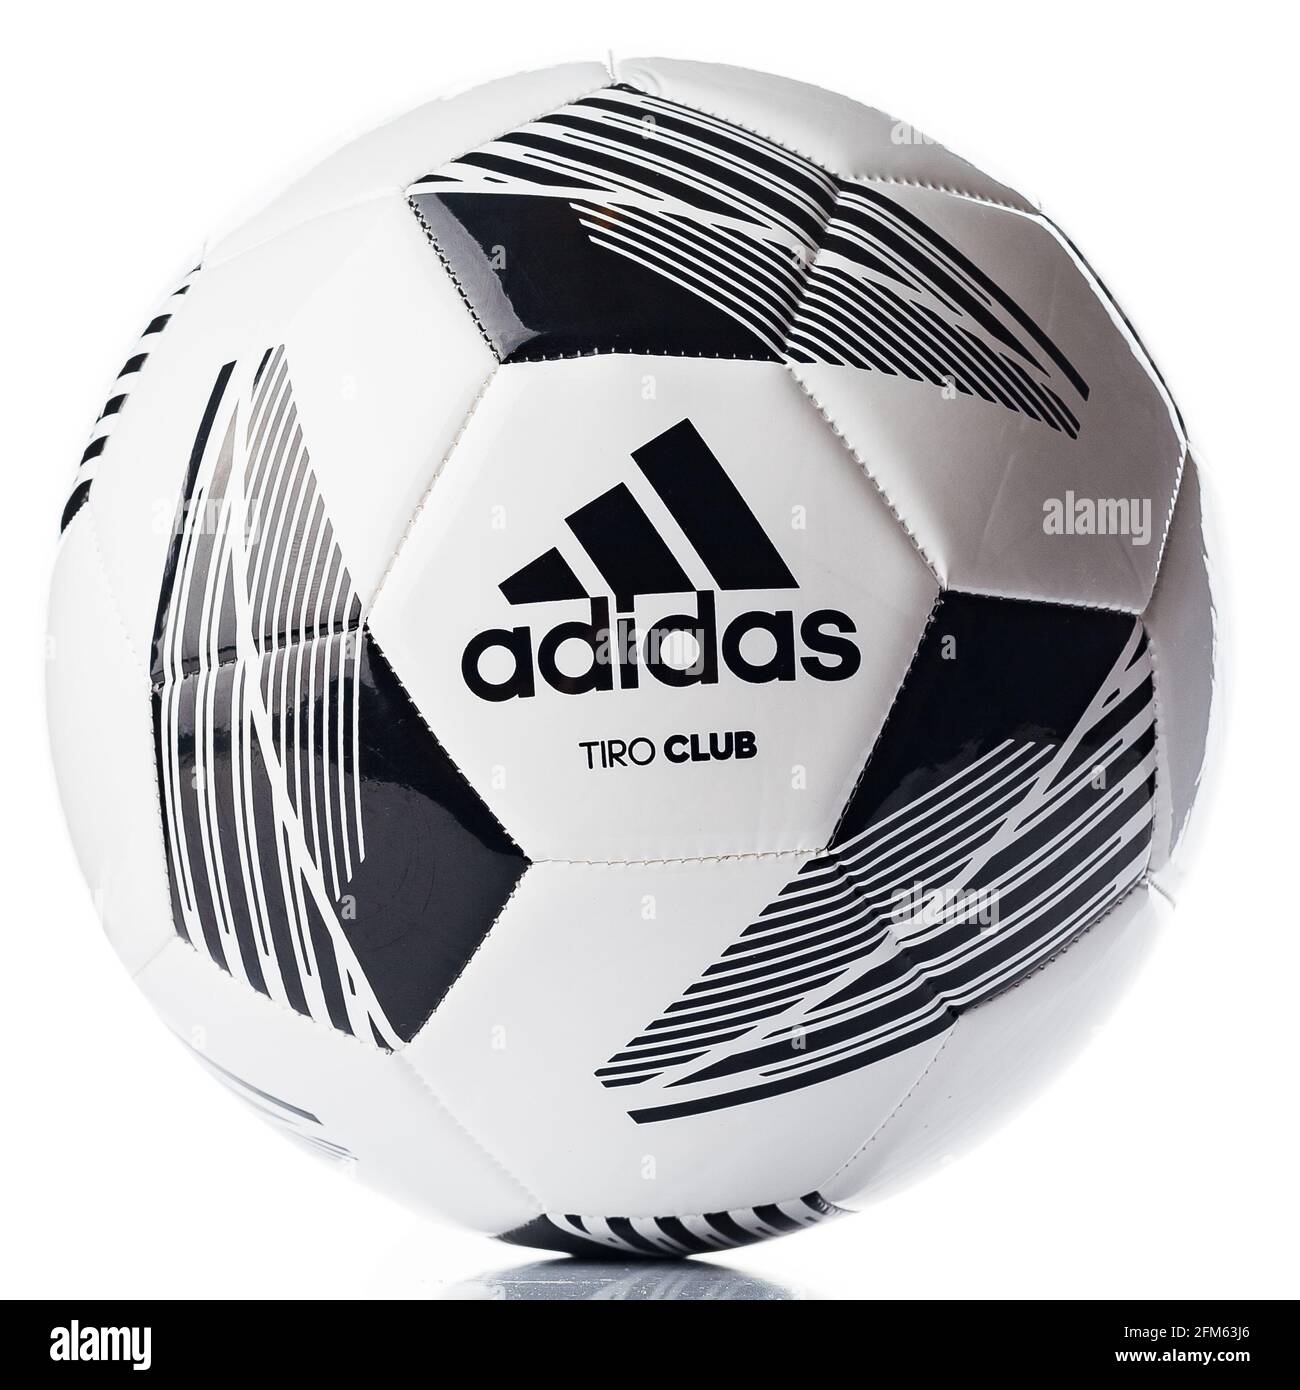 Fútbol, balón de fútbol Adidas Tiro Club sobre fondo blanco. Logotipo de la marca  adidas Fotografía de stock - Alamy